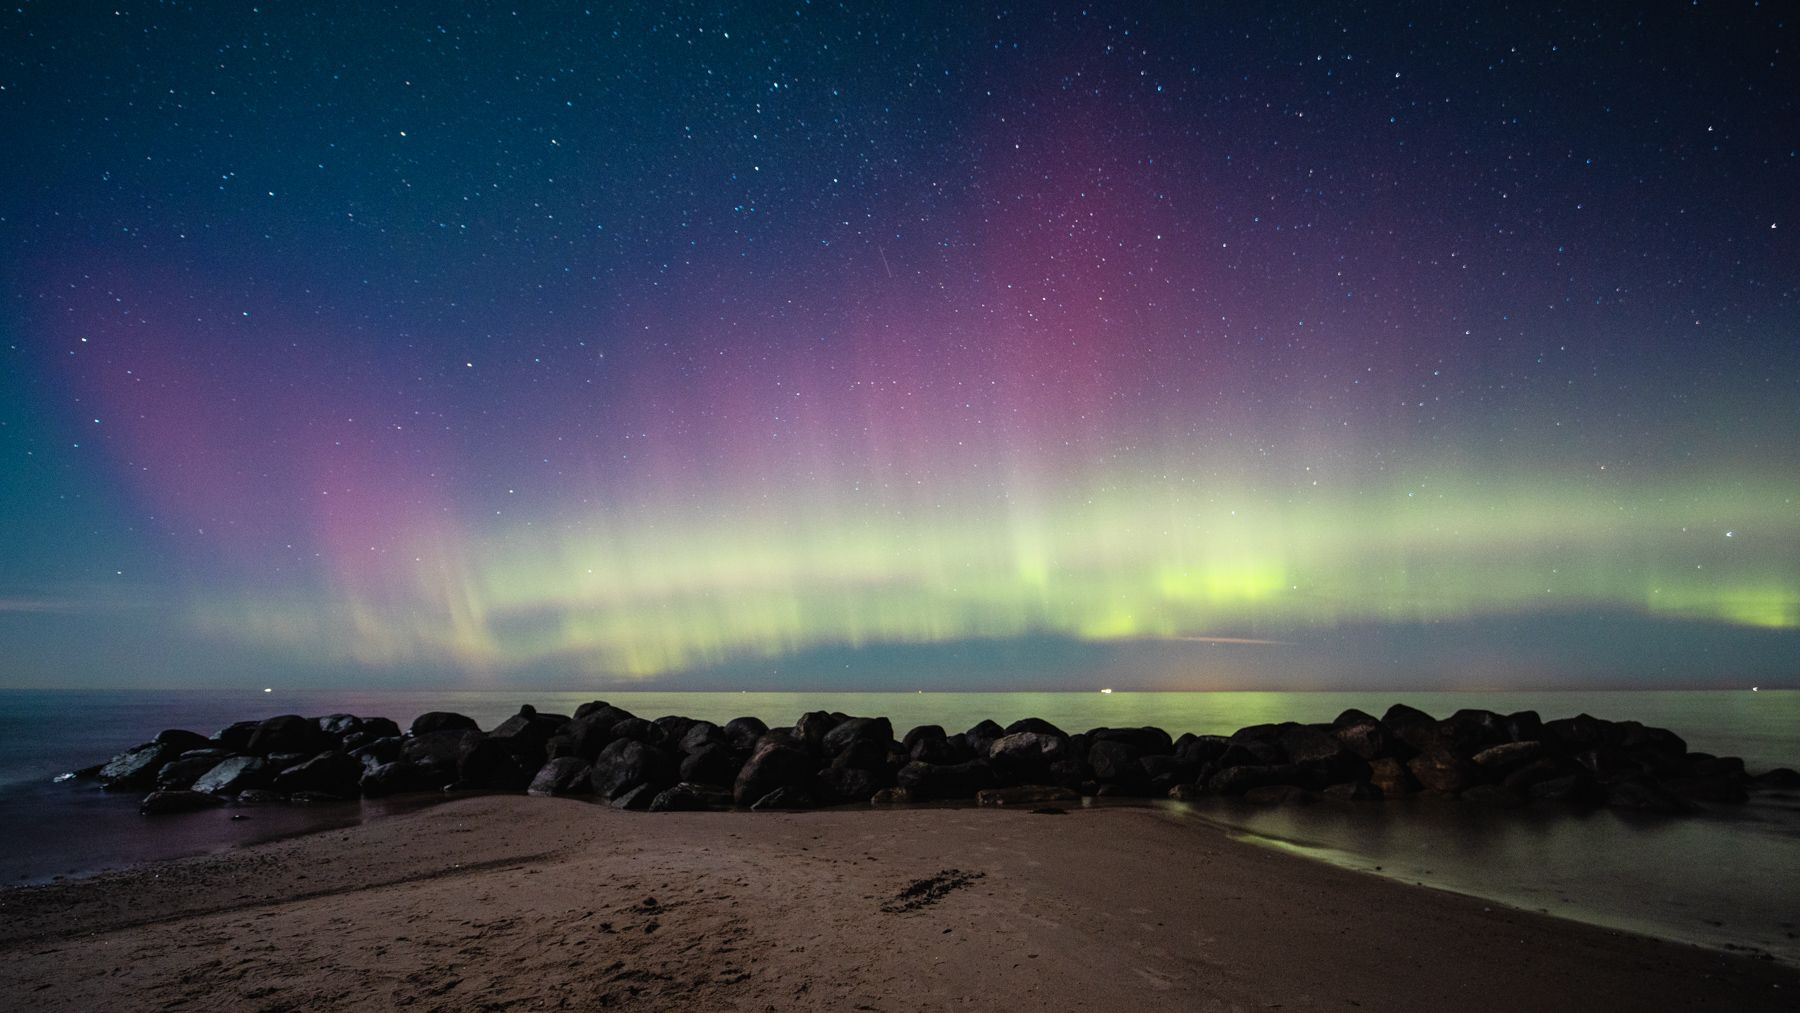 aurora-borealis-northern-lights-denmark-gilleleje-gegenwind-astro-photography-2